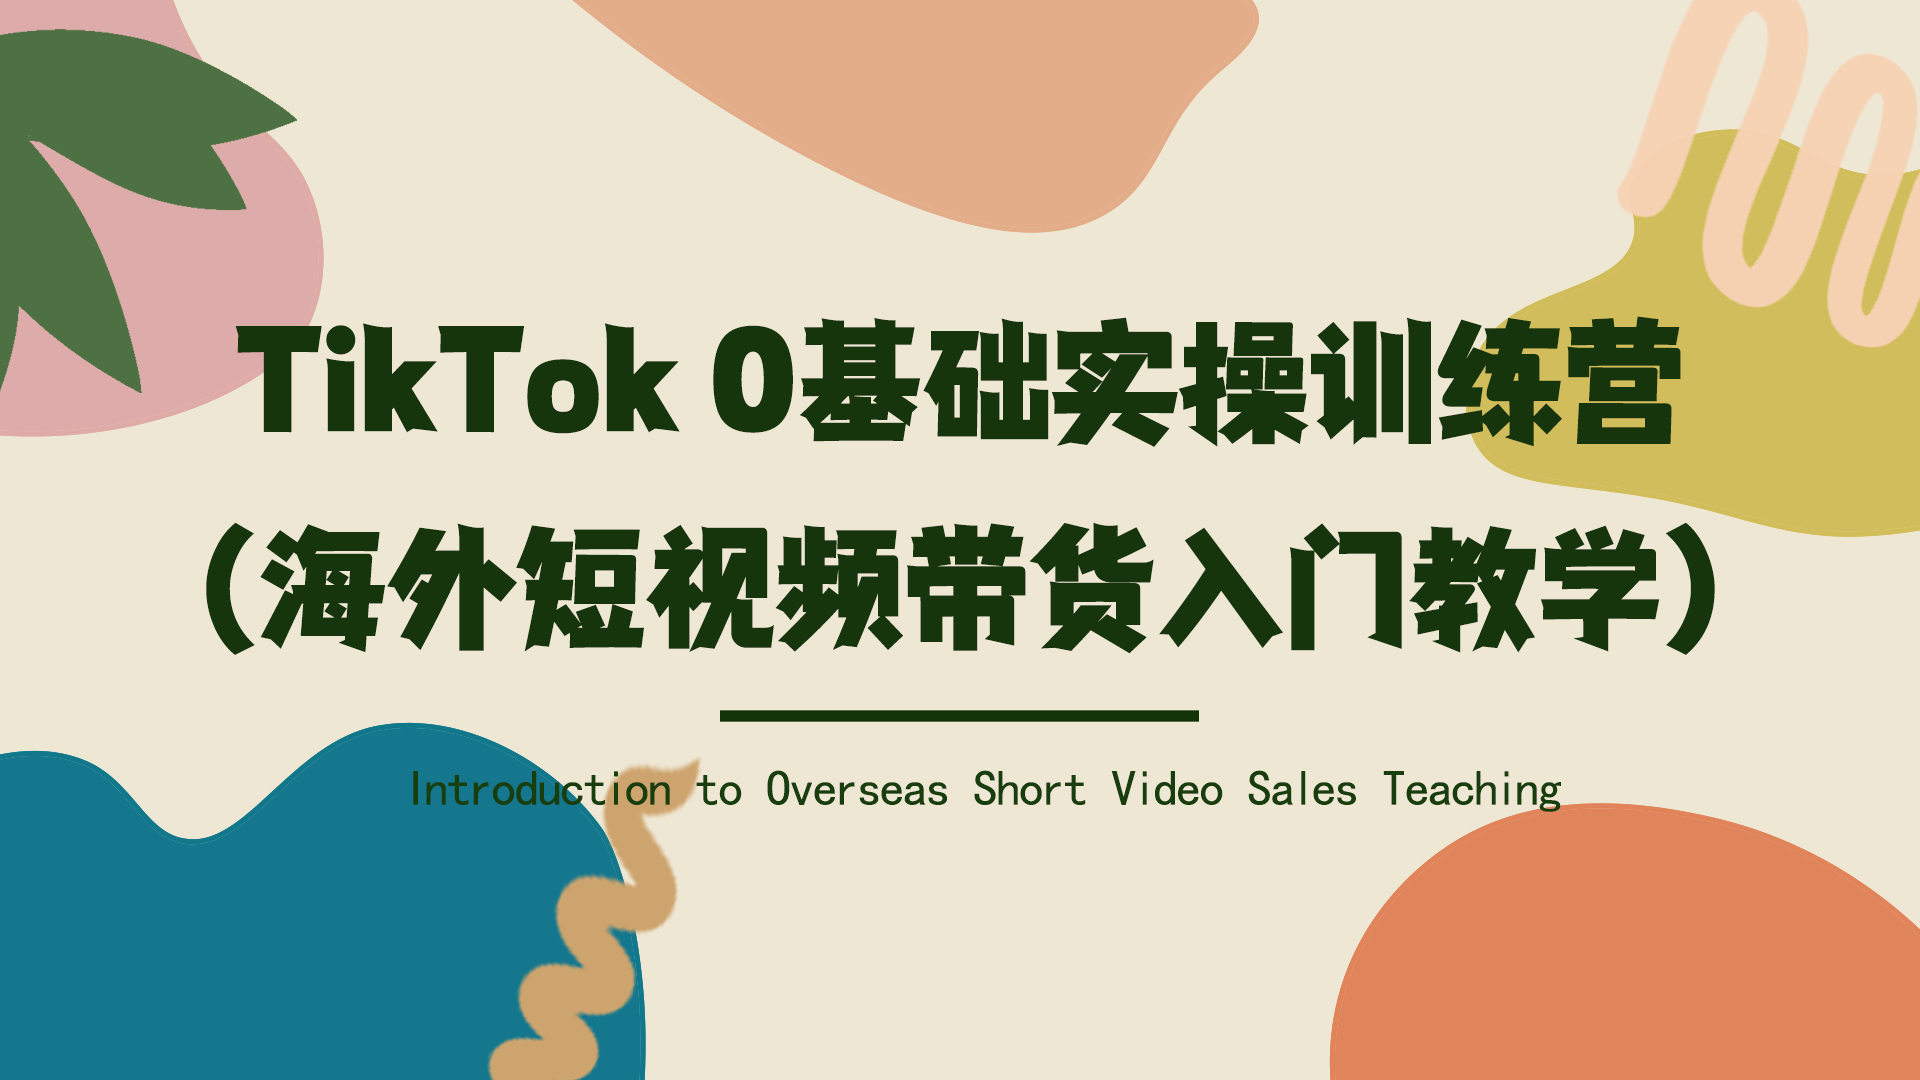 TikTok 0基础实操训练营（海外短视频带货入门教学）网赚项目-副业赚钱-互联网创业-资源整合歪妹网赚